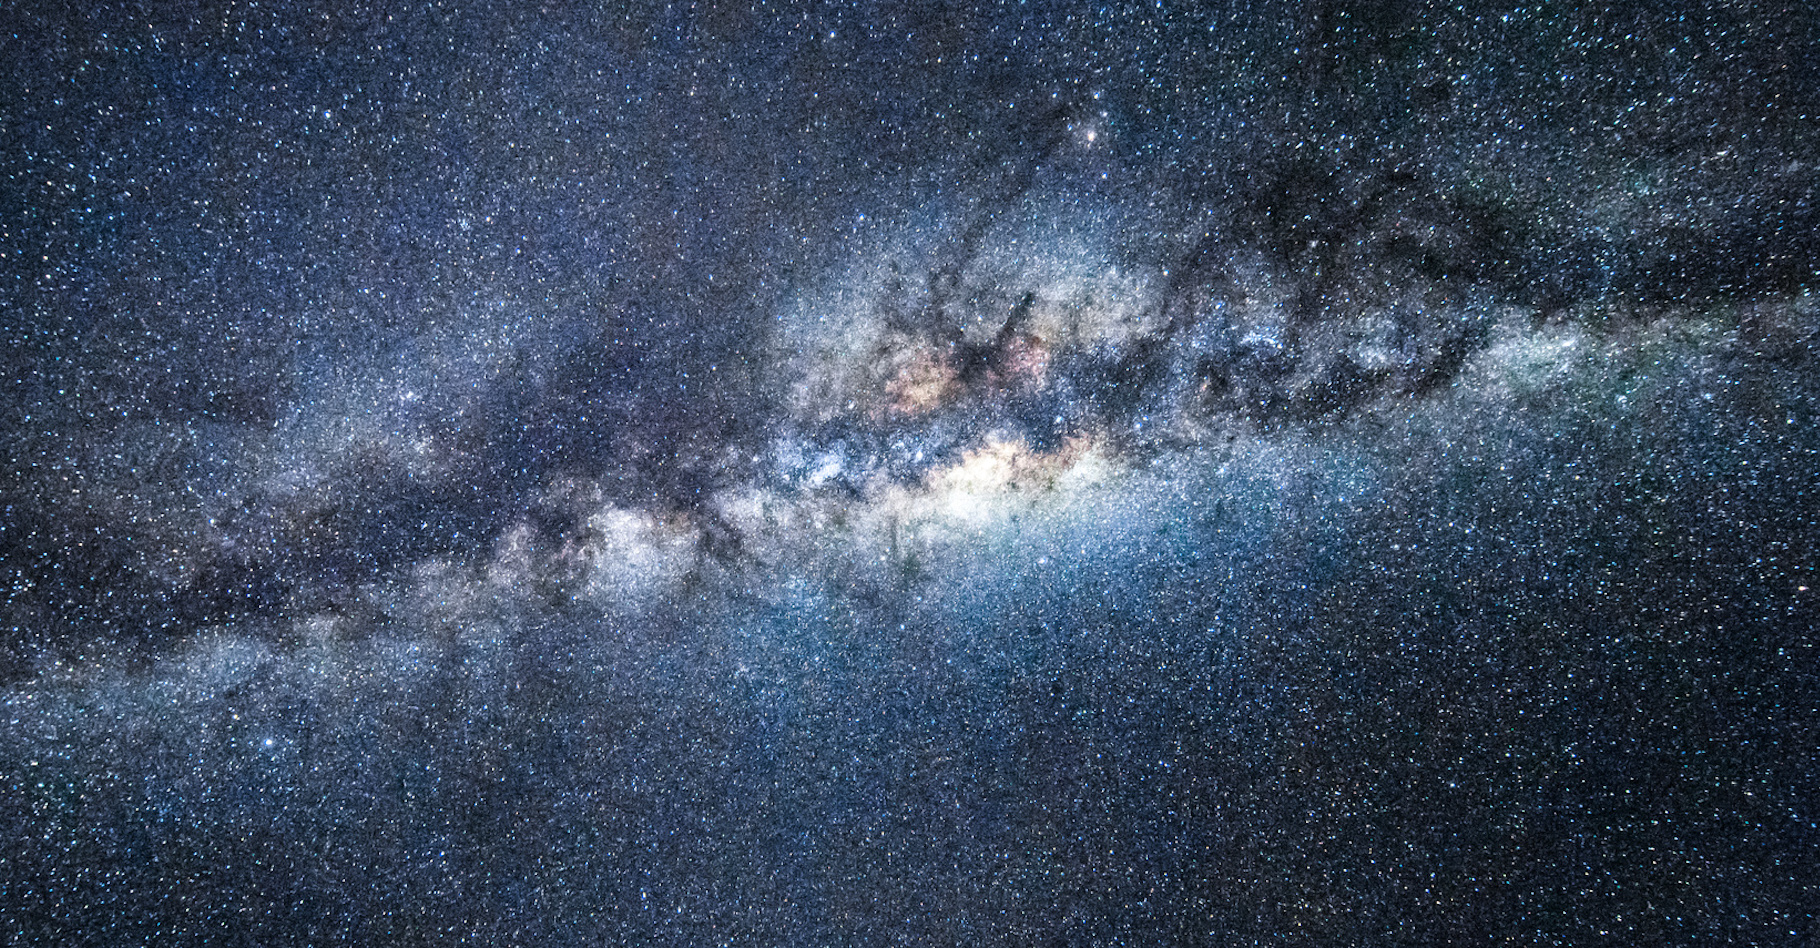 Les jeunes étoiles massives situées dans le halo galactique de la Voie lactée comme PG1610+062 vivent loin des régions qui forment des étoiles. Les astronomes tentent de comprendre comment ces « étoiles en fuite » ont été forcées de quitter leur lieu de naissance. De nouvelles observations suggèrent qu’un trou noir de masse moyenne pourrait être responsable de l’expulsion de l’étoile. © eyetronic, Fotolia